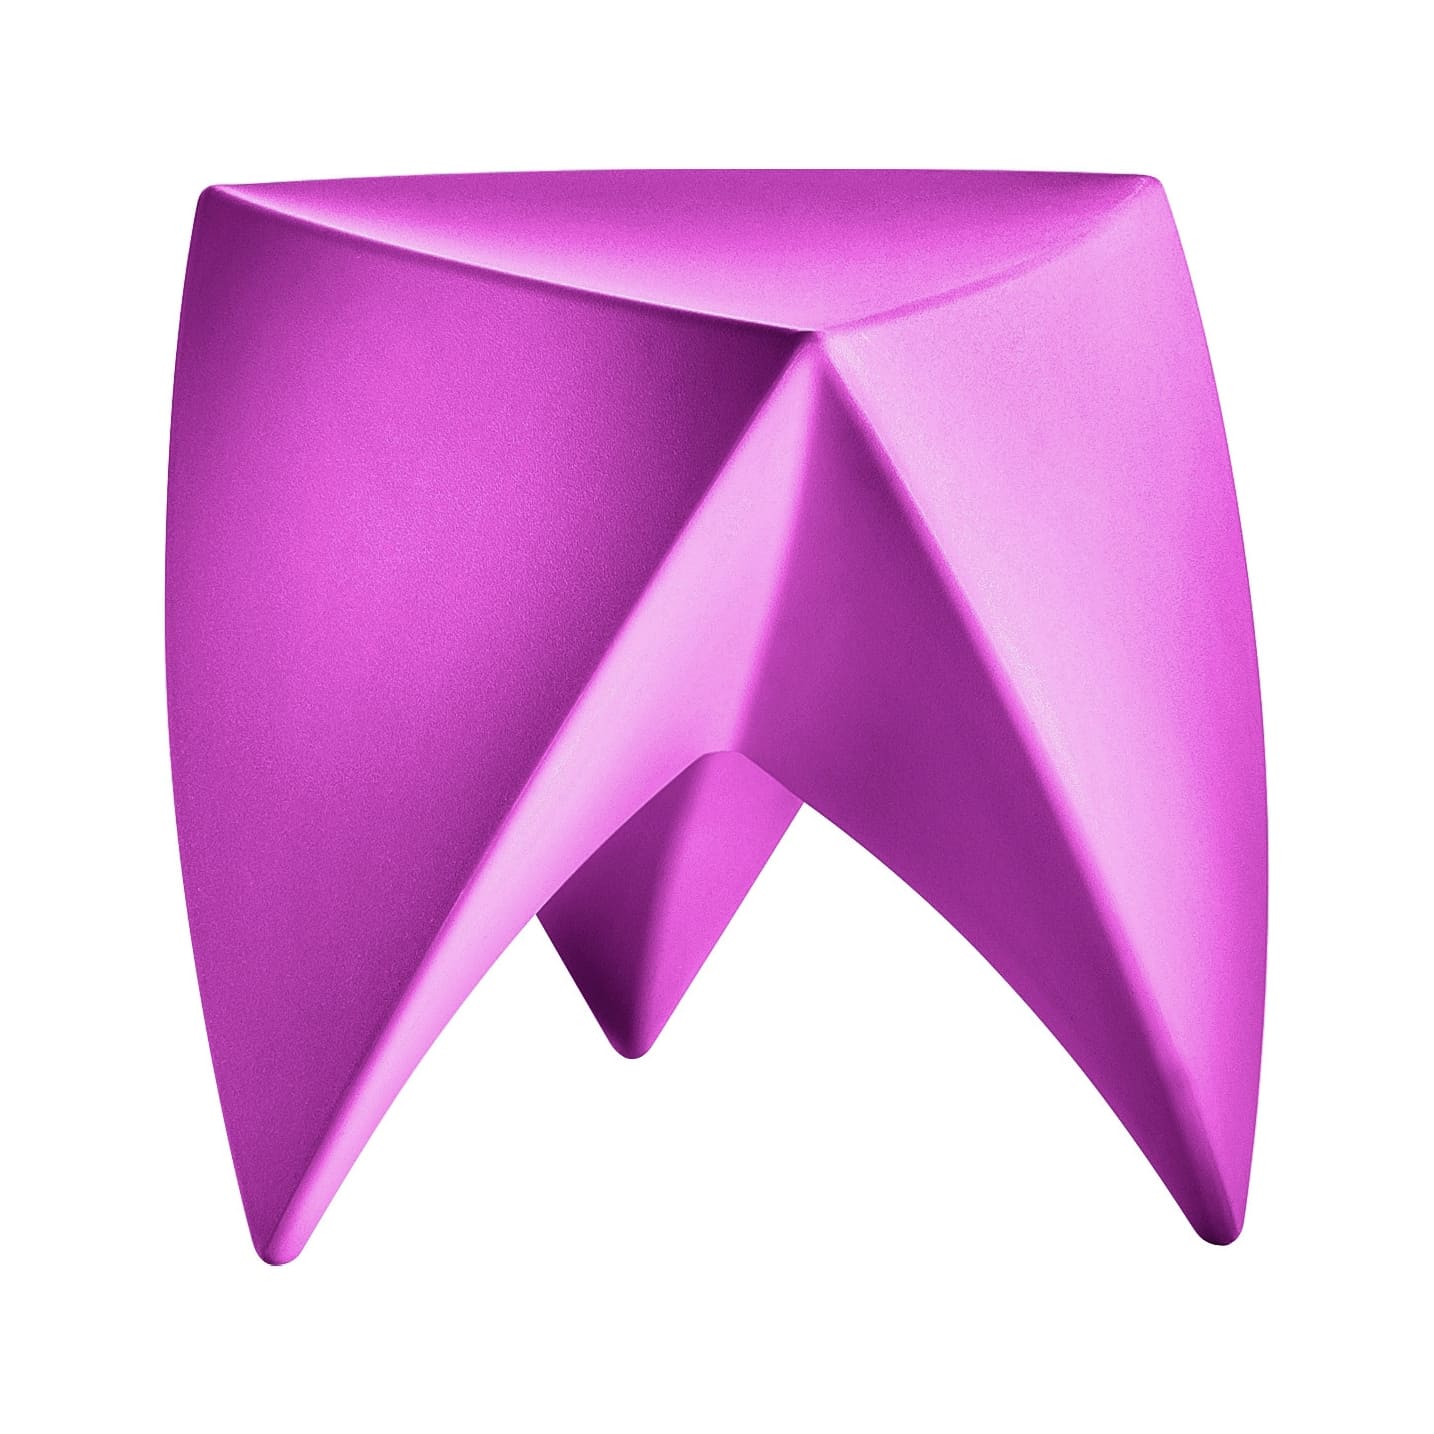 Pouf forme de dent TOOTH - Pouf design salle d\'attente cabinet dentaire